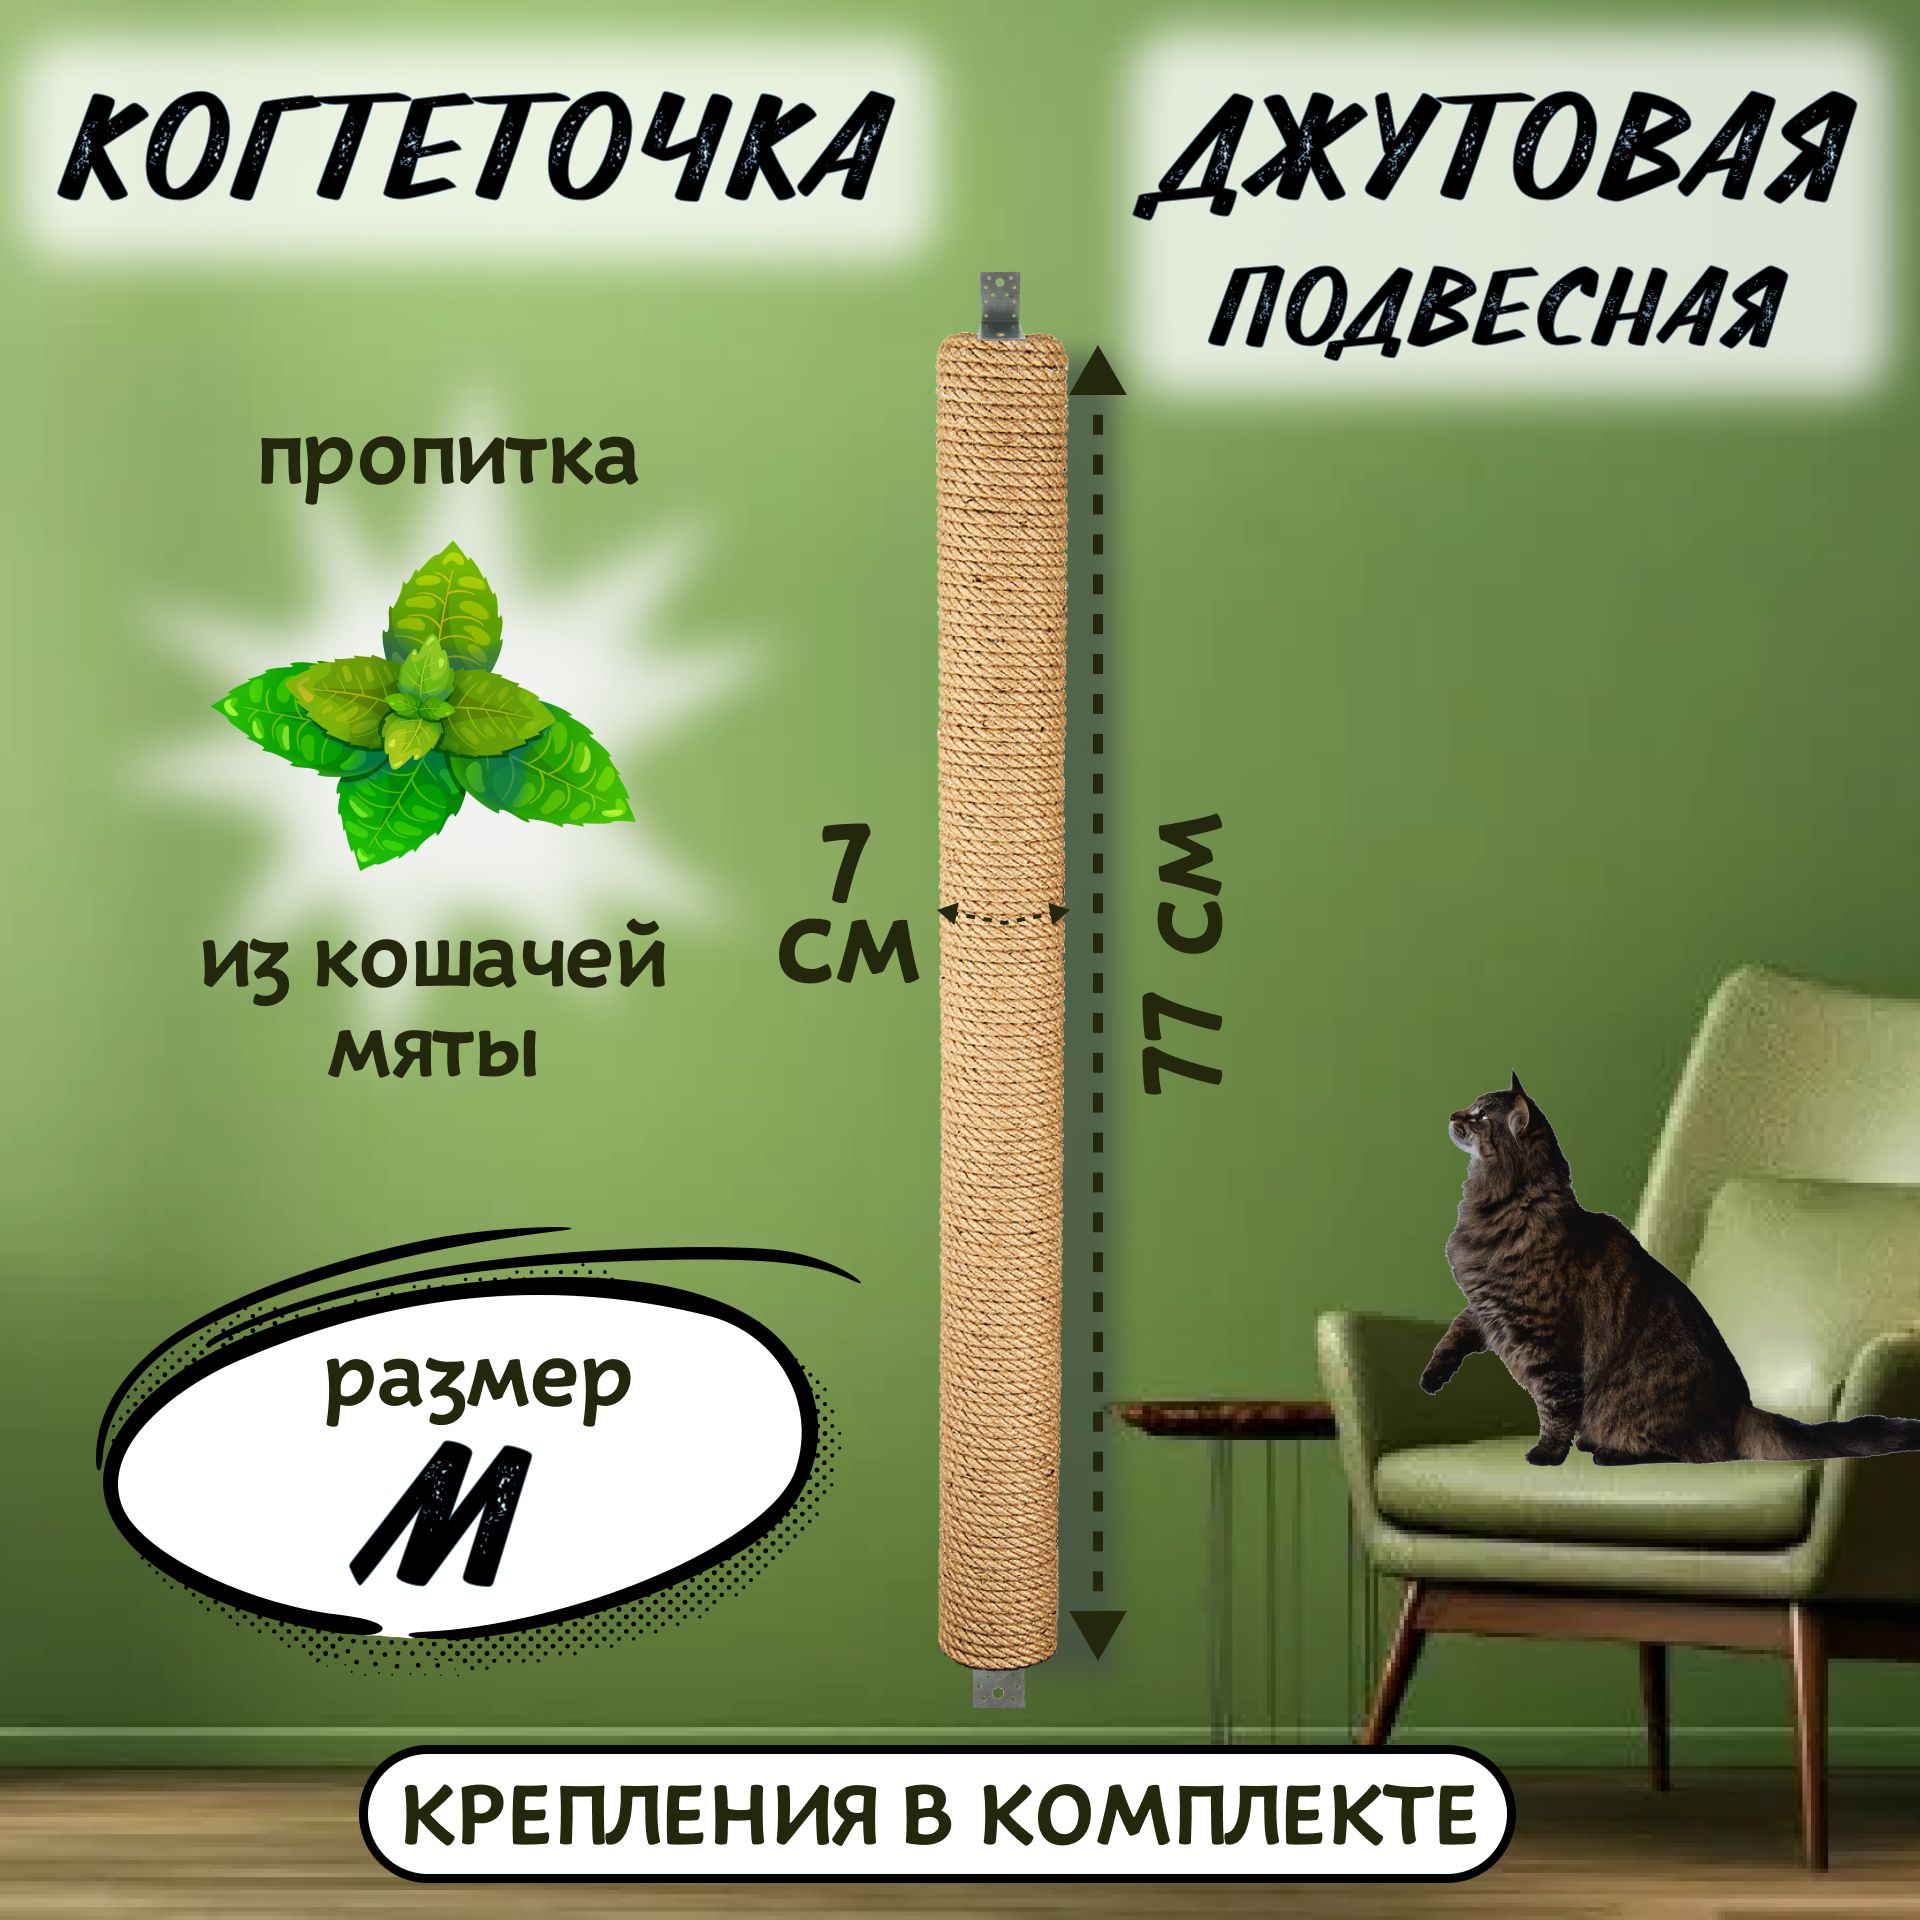 Cat's area / Кошкин уголок